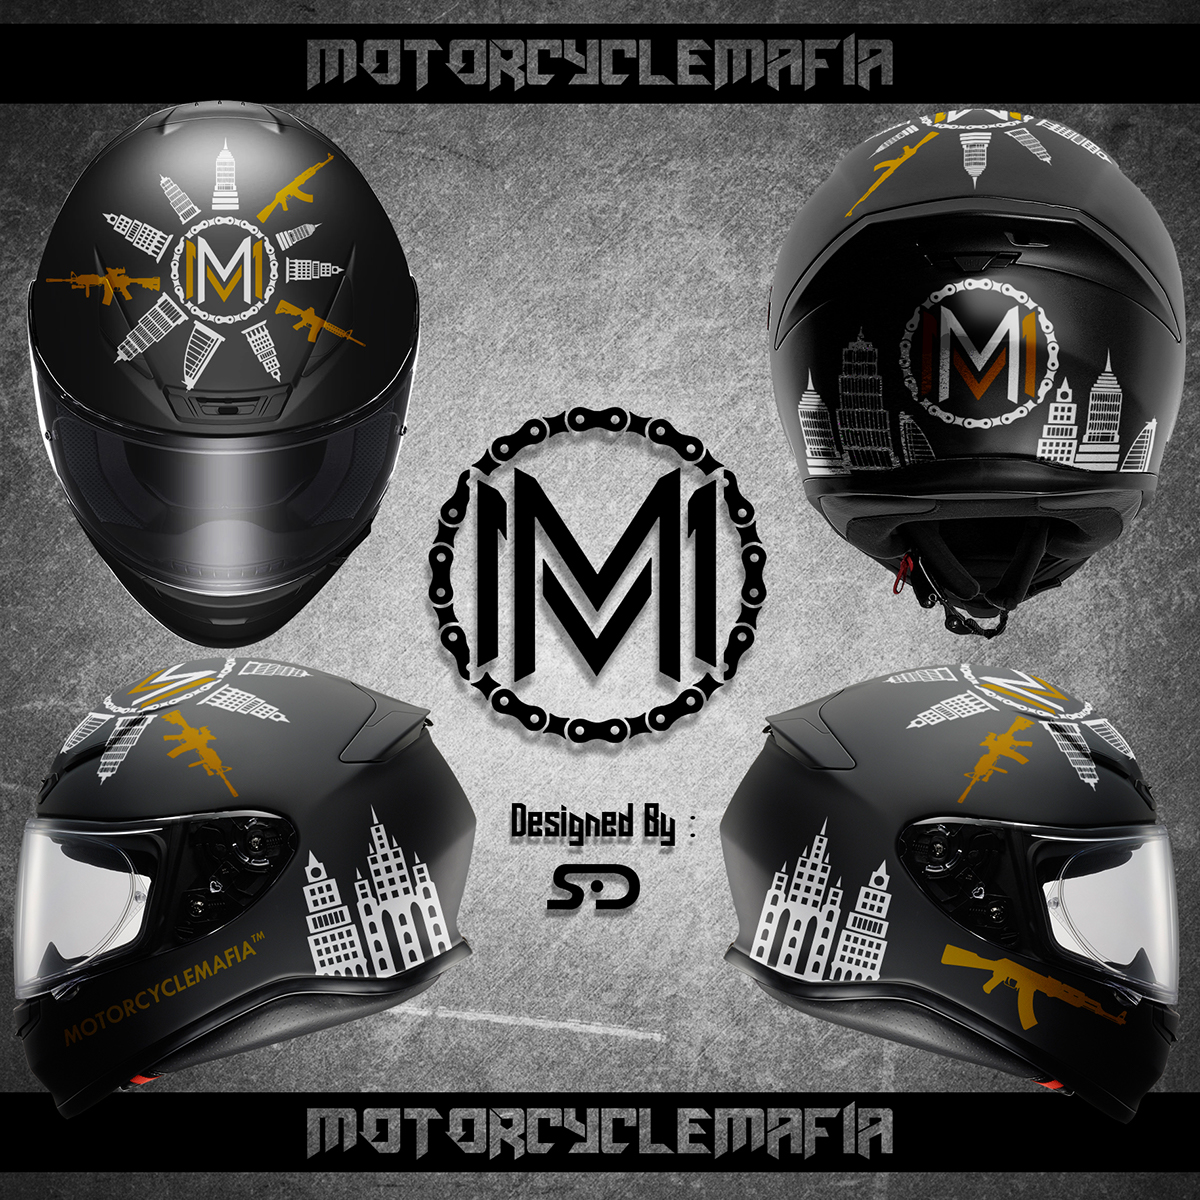 Helmet design helmet design Simon Designs SD Project bikers riders helmets motorcycle motorcyclist